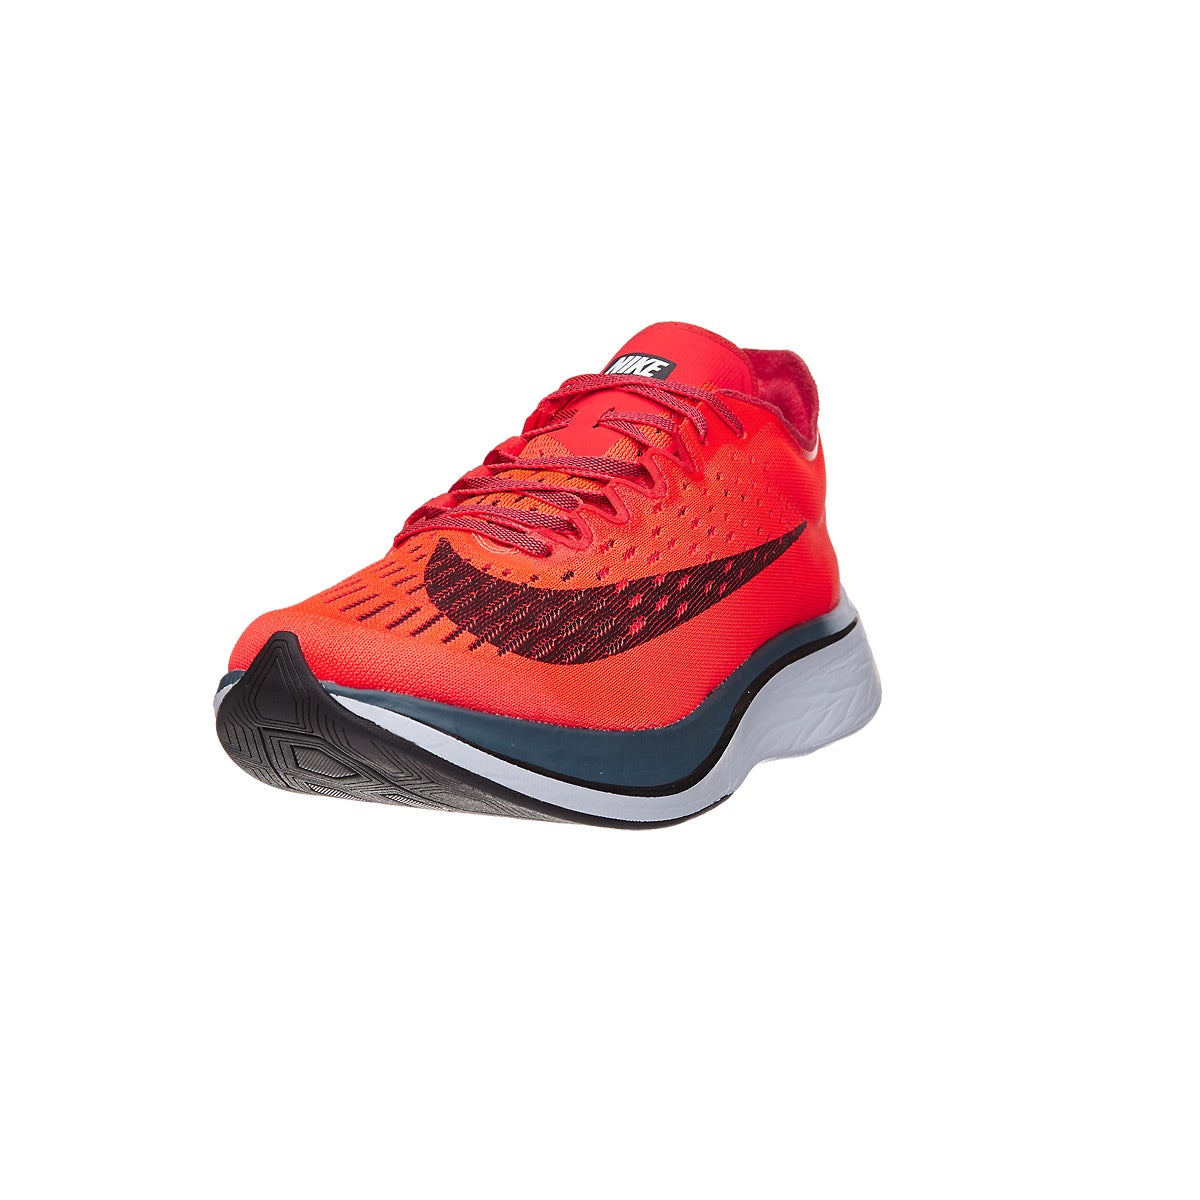 Nike Zoom Vaporfly 4% Unisex Shoes 